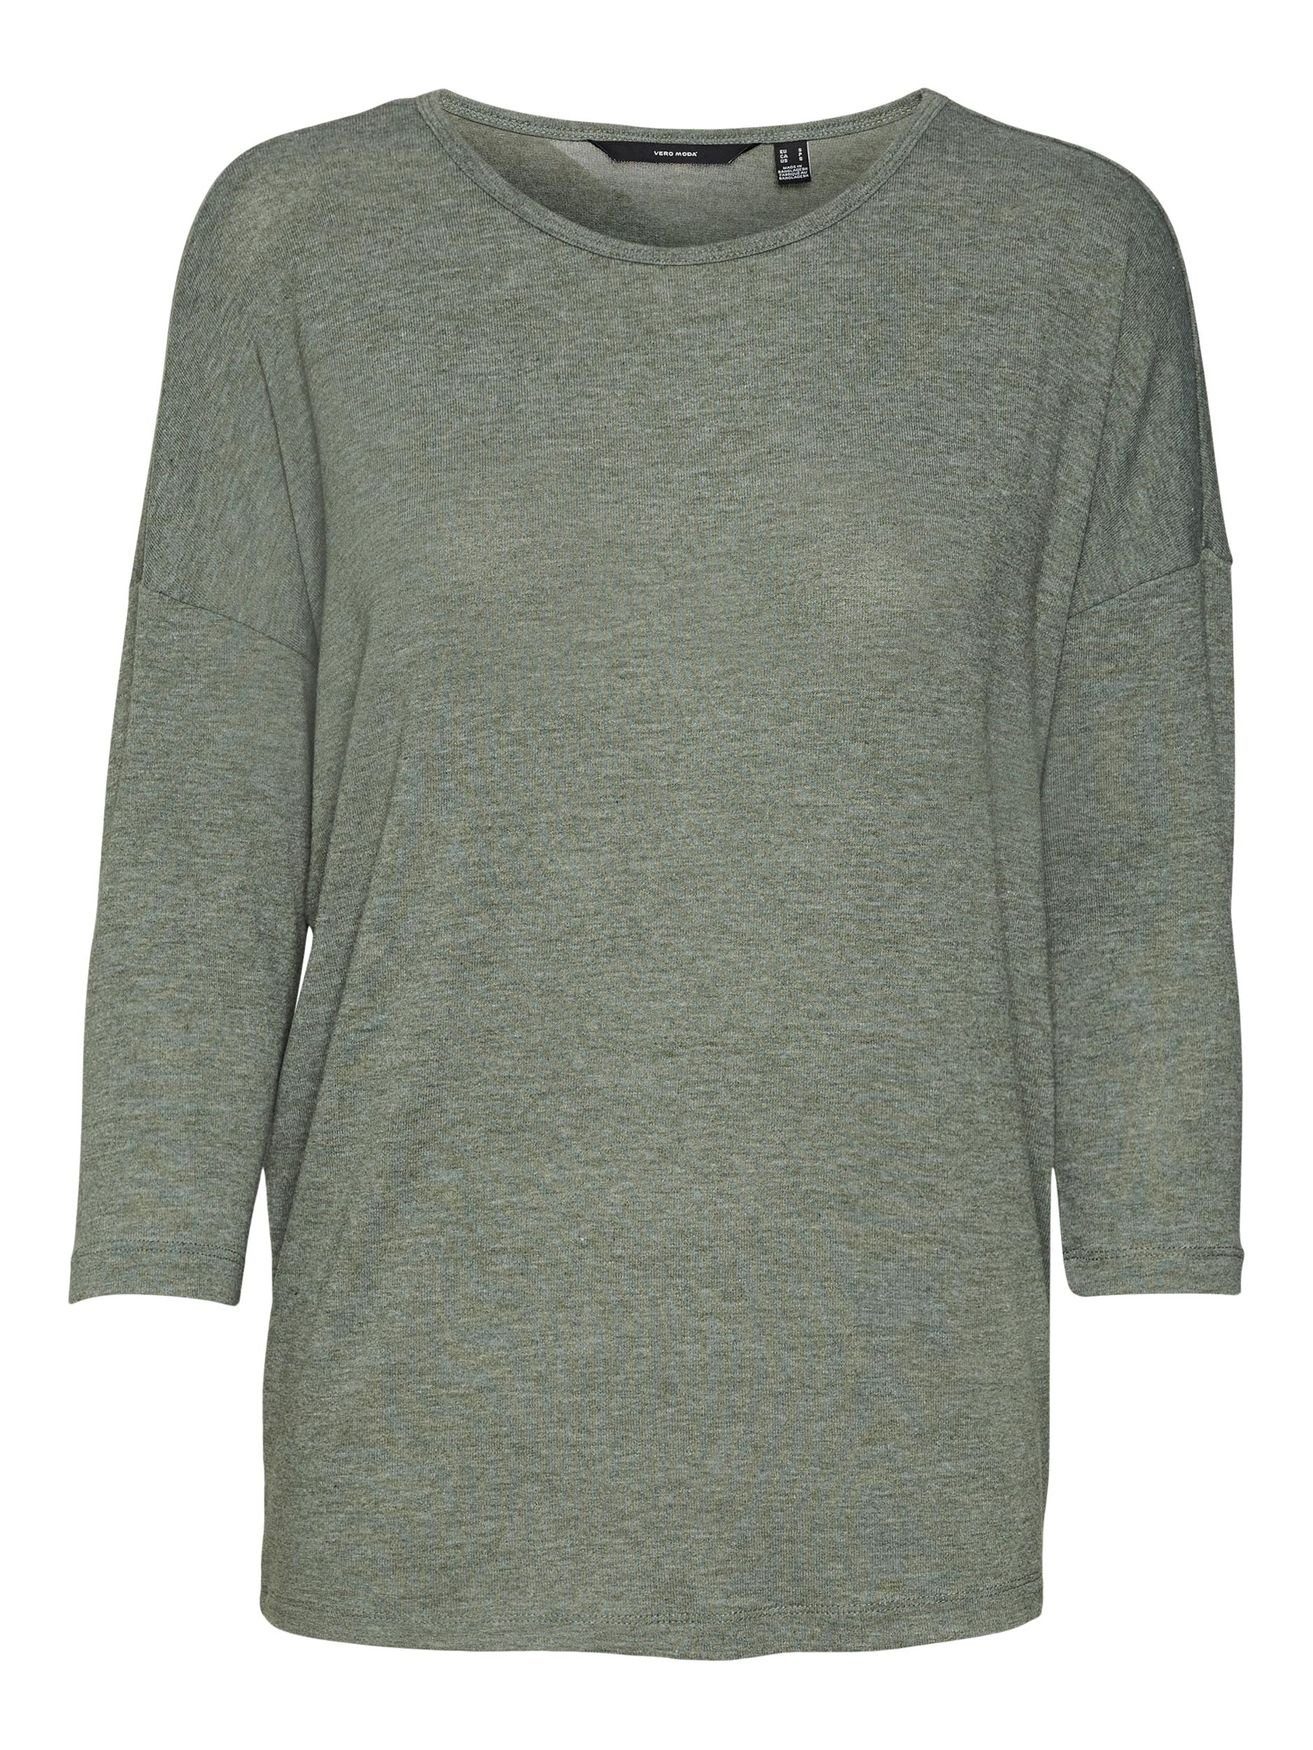 Vero Moda T-Shirt Einfarbiges 4856 Langarm Rundhals Grün Top 3/4 Oberteil Shirt in Arm VMCARLA